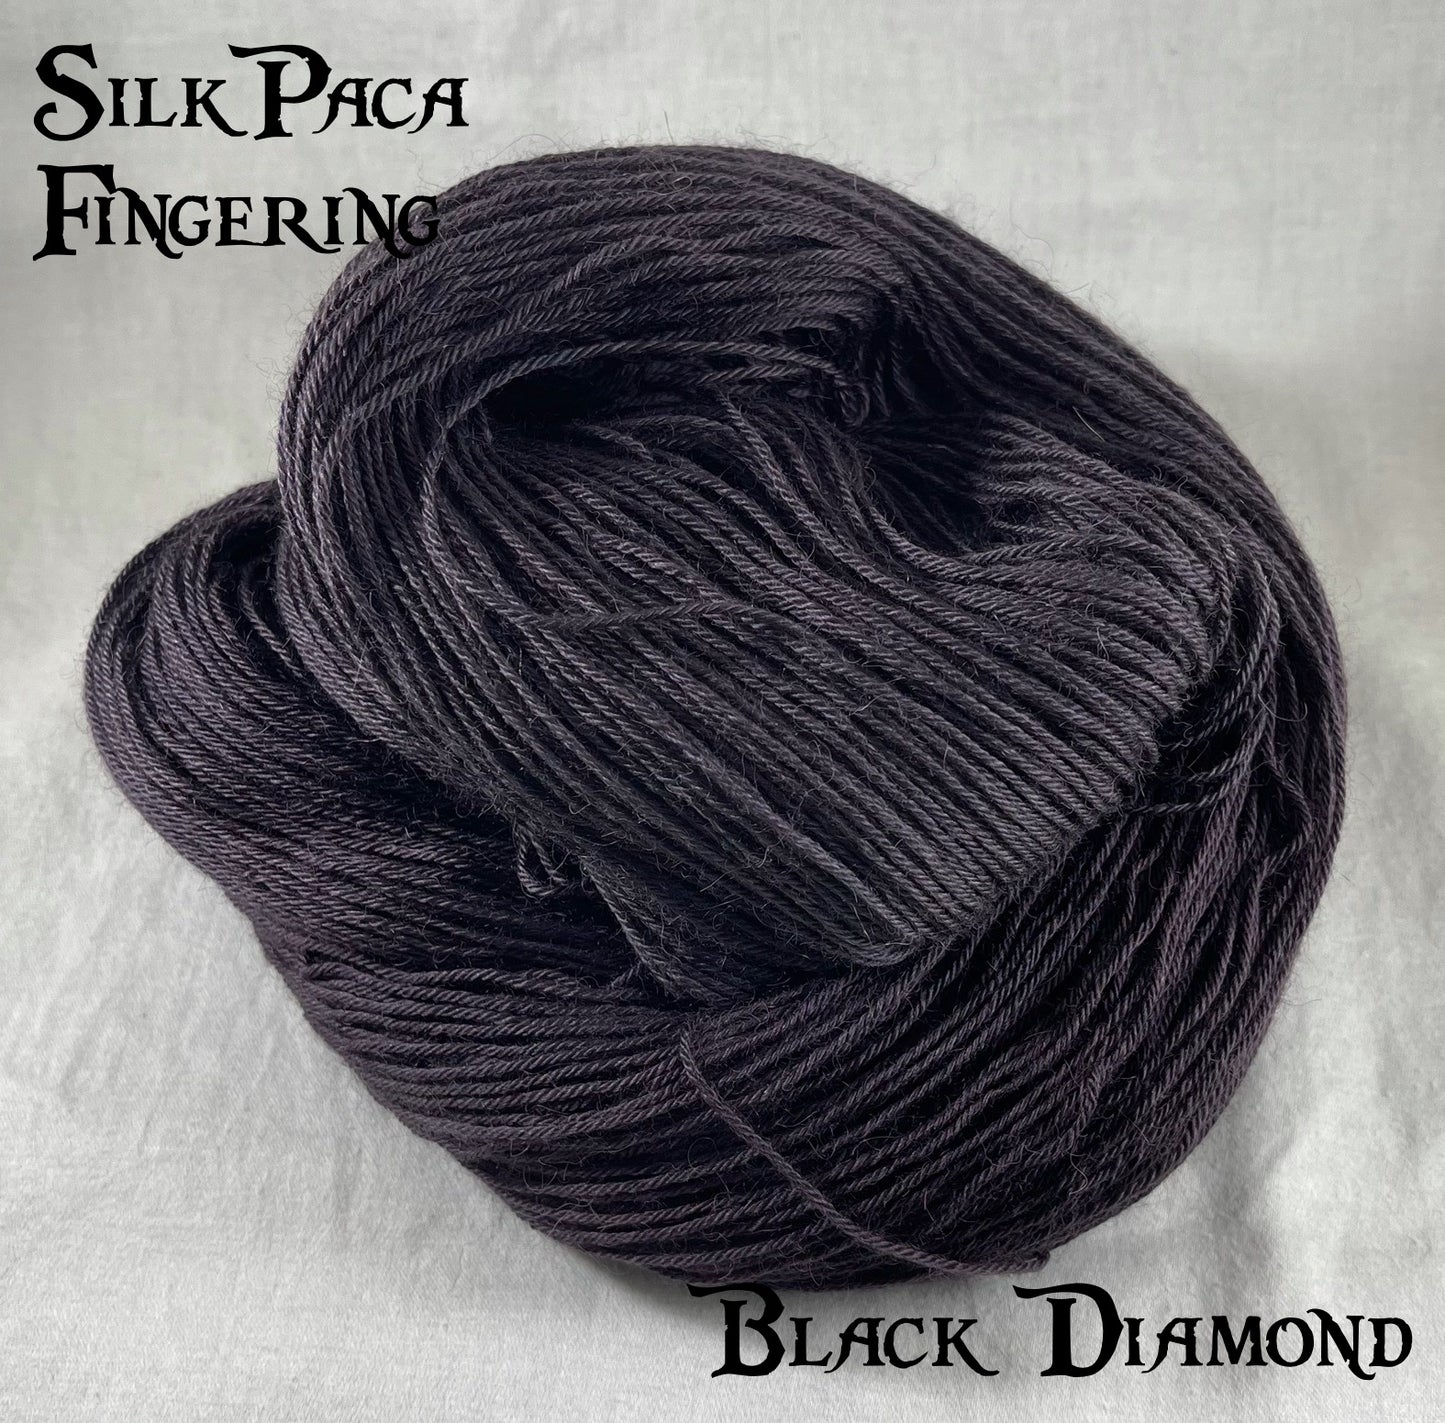 SilkPaca Fingering